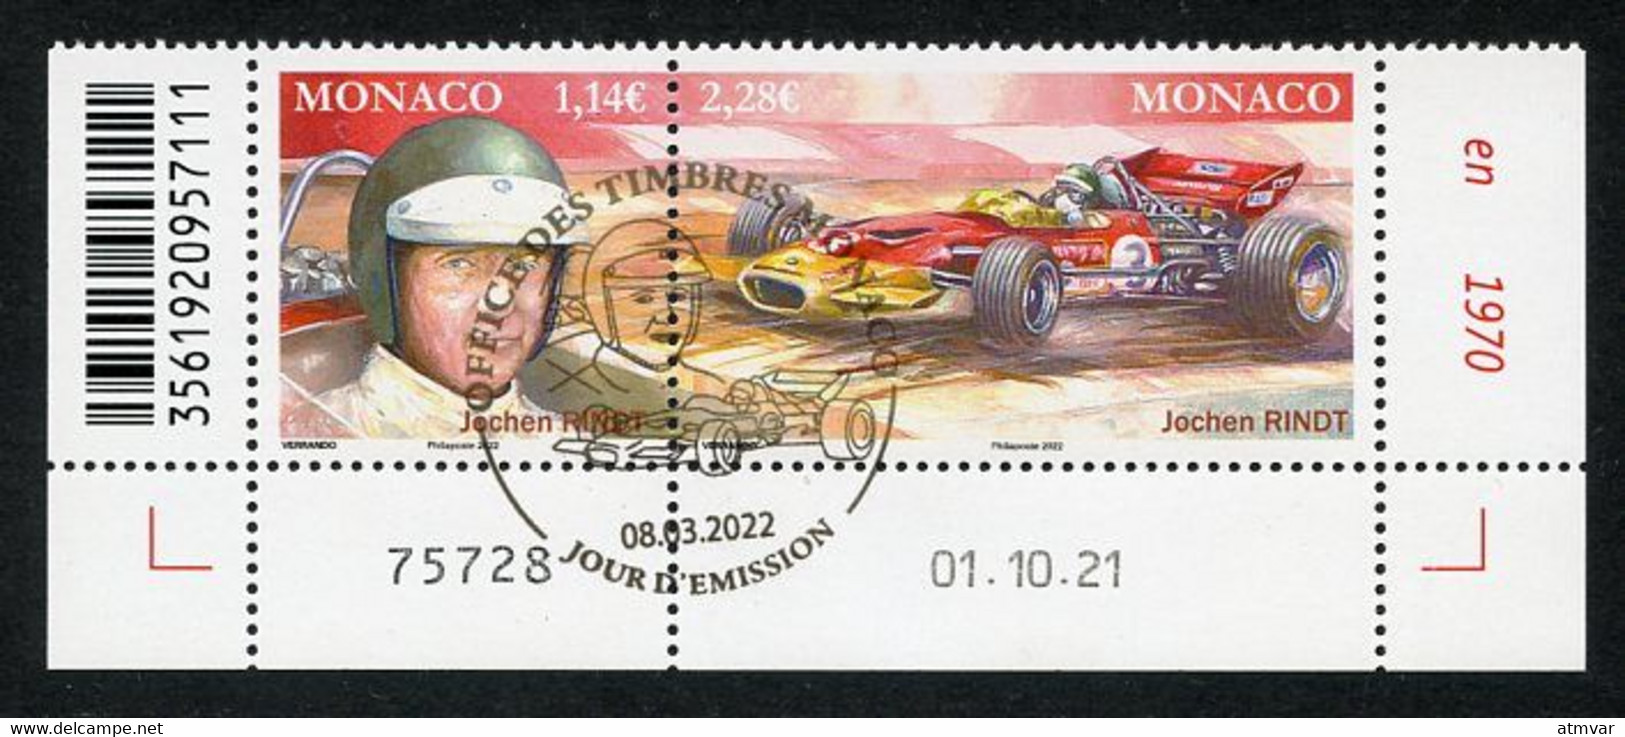 MONACO (2022) Pilotes Mythiques, Formula Formule 1, F1, Jochen Rindt (1942-1970), Grand Prix, Lotus 72 - Coin Daté - Usados